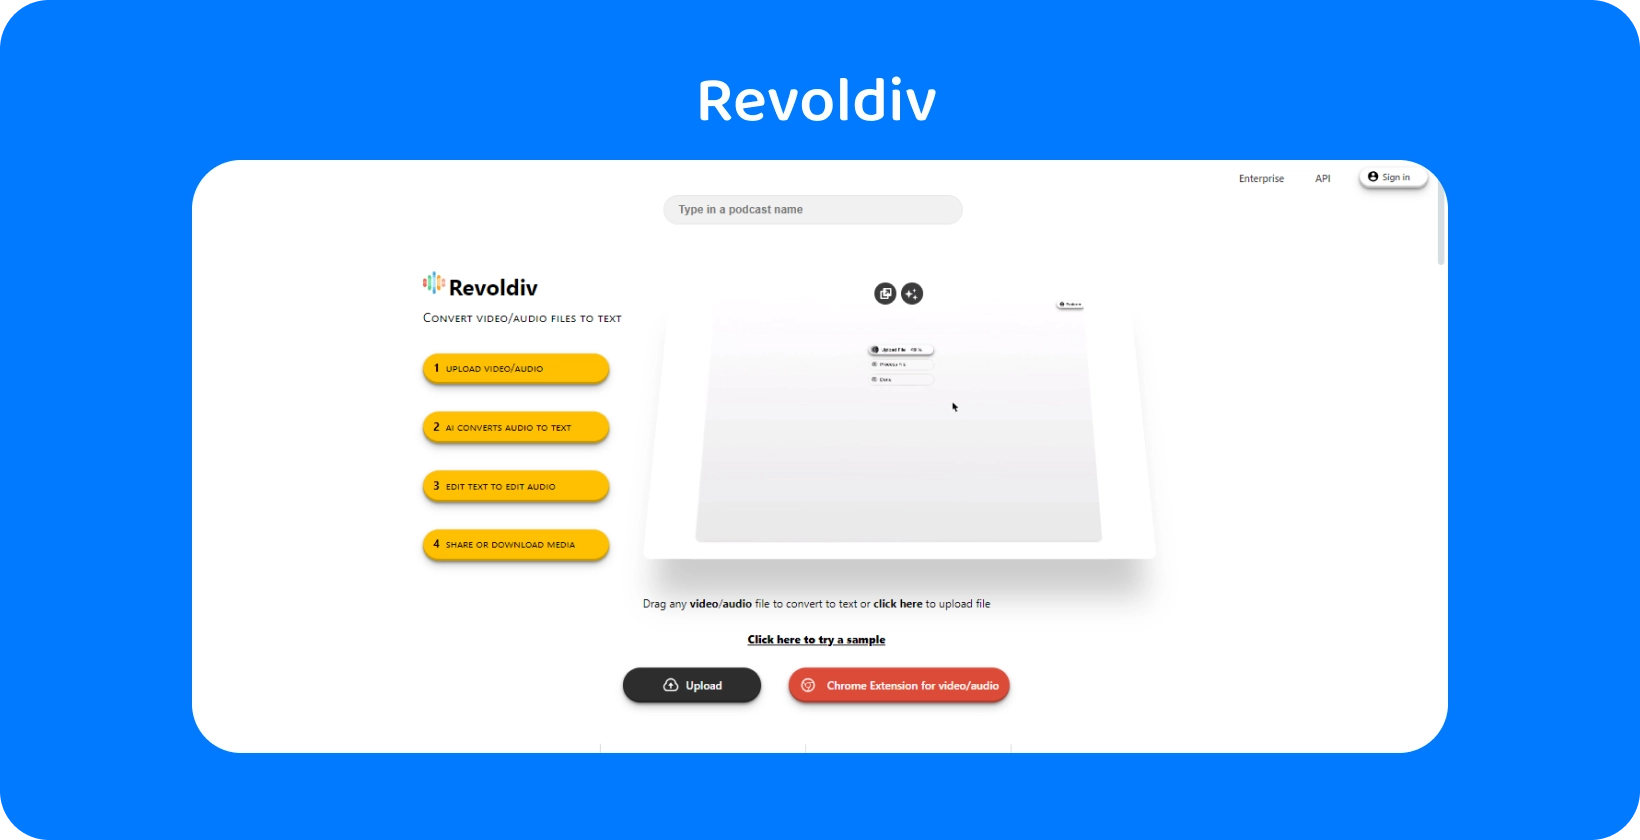 A Revoldiv karcsú webes felülete készen áll a hangfeltöltésre és a szöveggé alakításra, egyszerűséget és hatékonyságot mutatva.